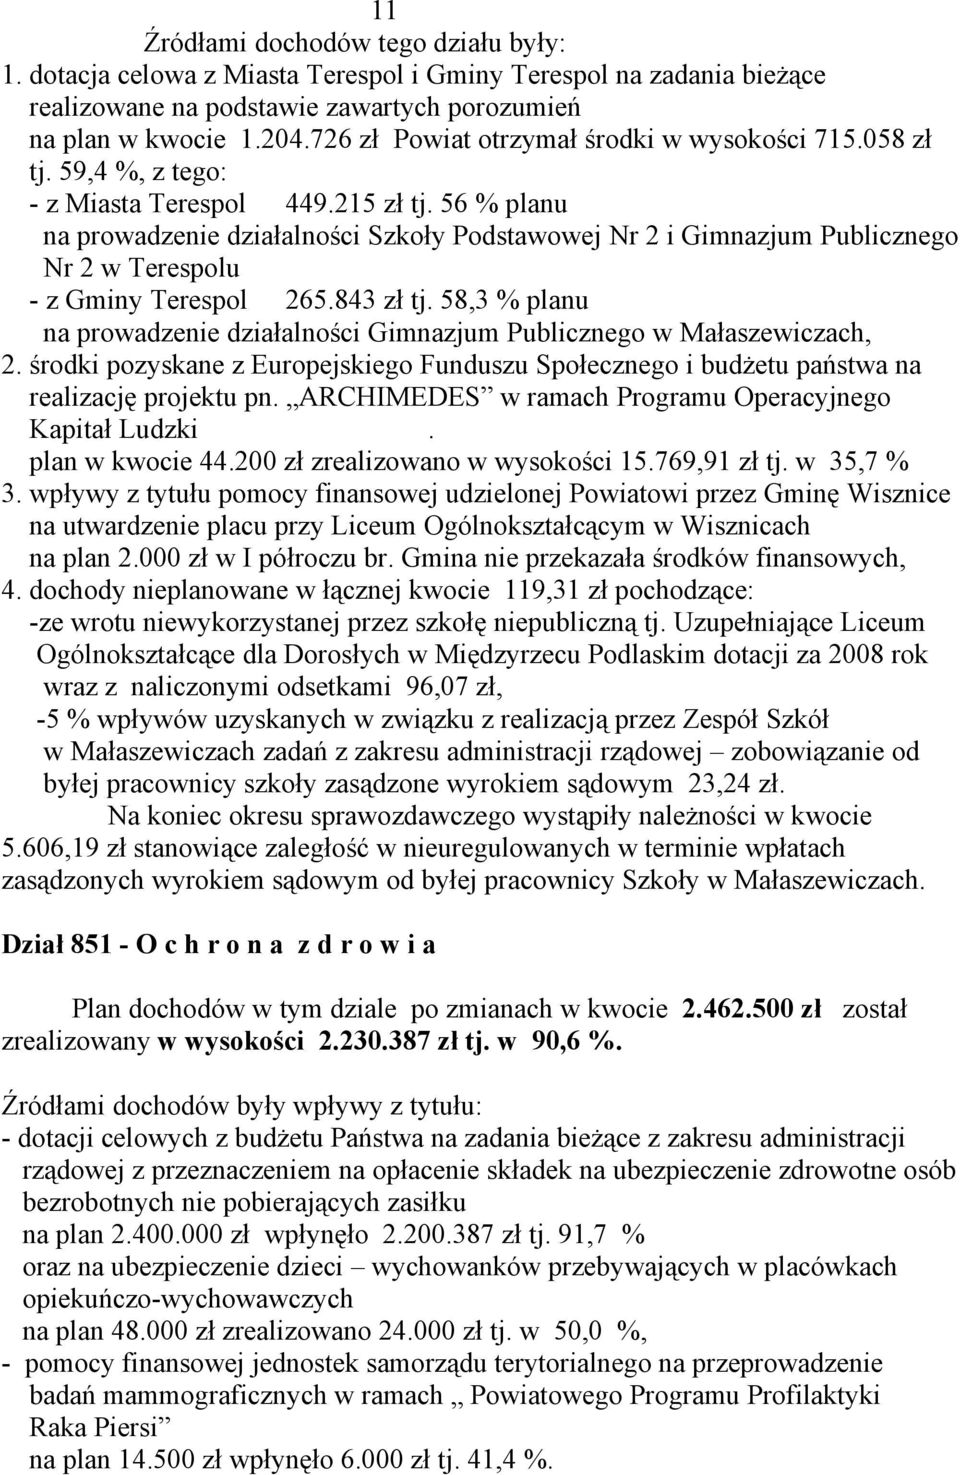 56 % planu na prowadzenie działalności Szkoły Podstawowej Nr 2 i Gimnazjum Publicznego Nr 2 w Terespolu - z Gminy Terespol 265.843 zł tj.